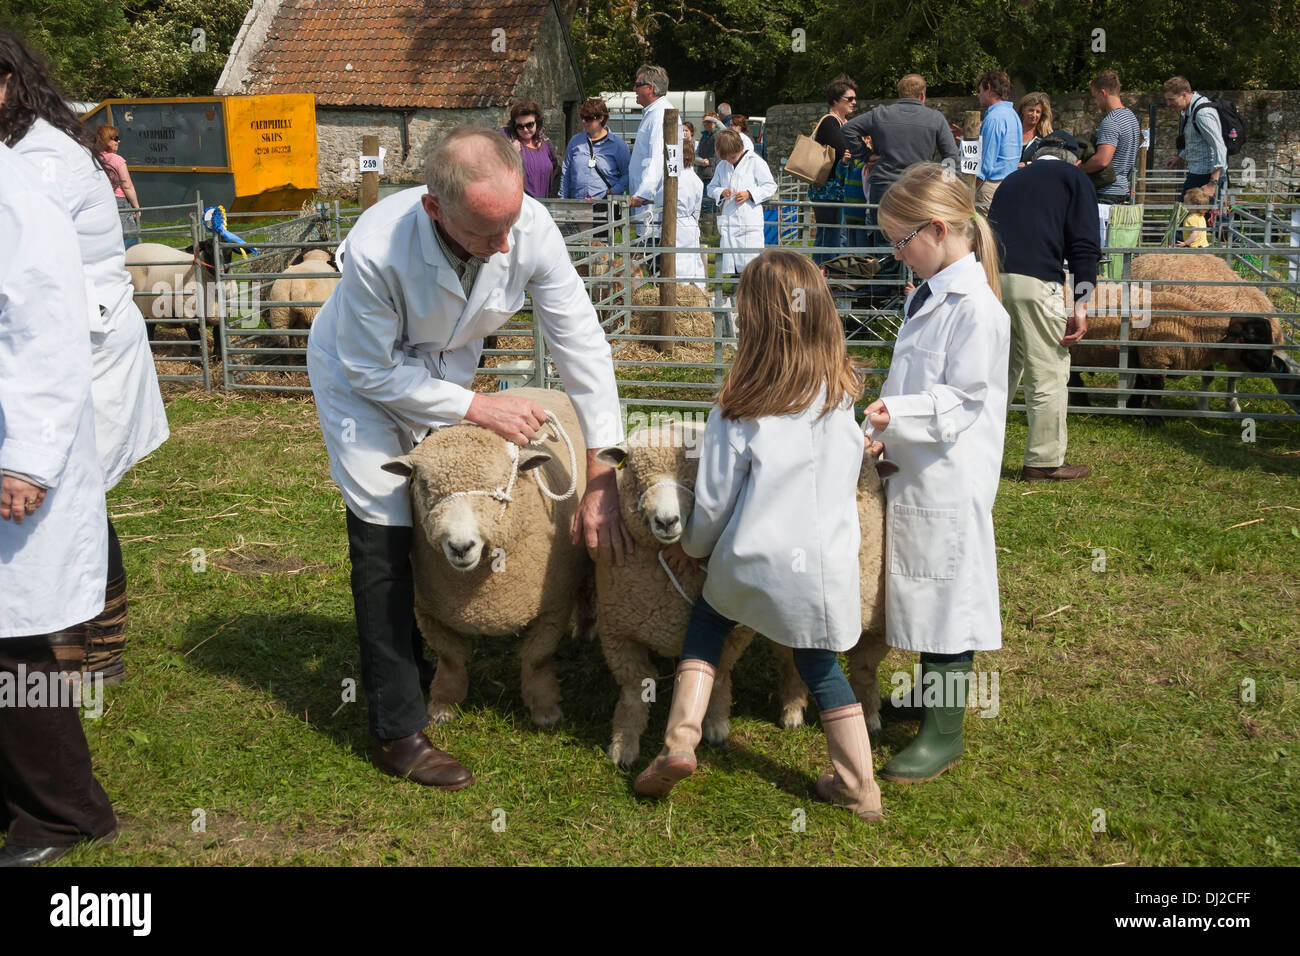 Sheep judging at show Stock Photo